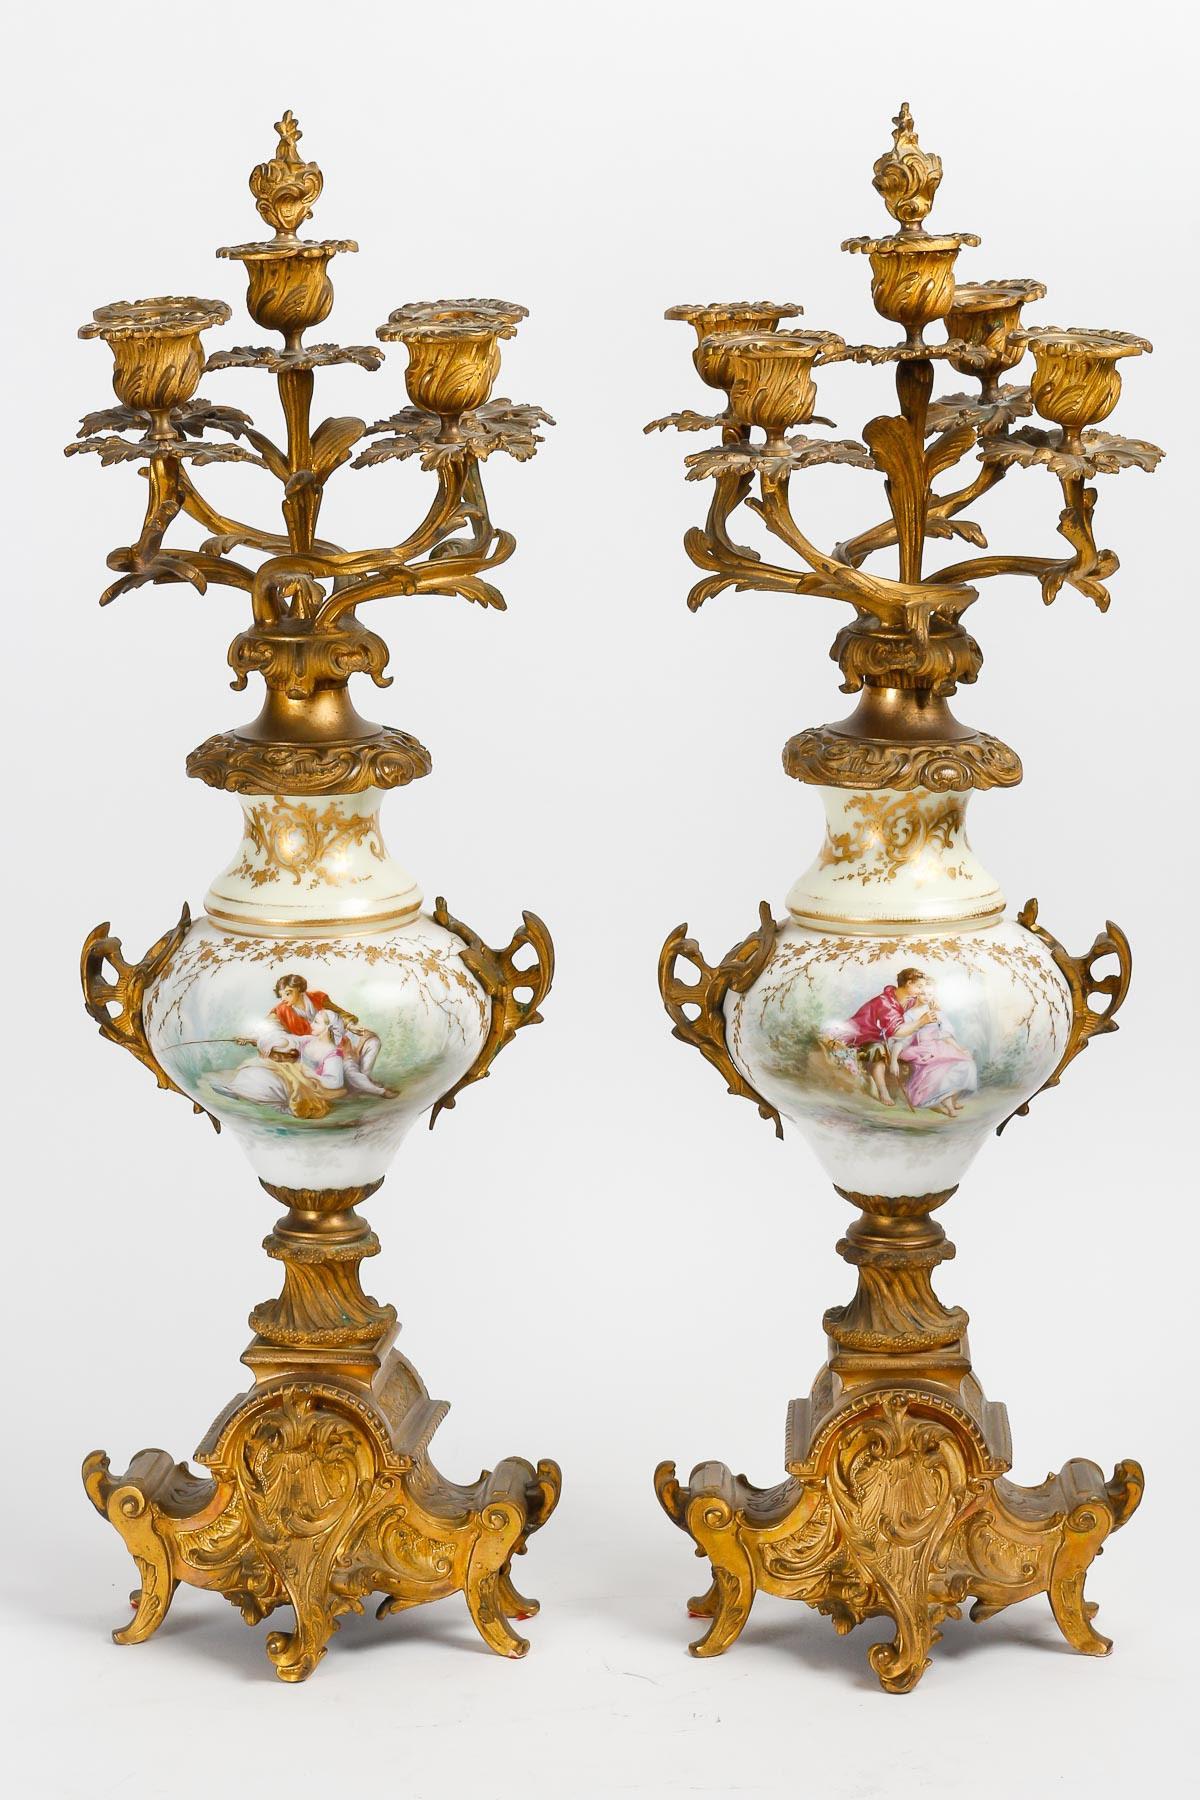 Garniture de cheminée en porcelaine de Sèvres du XIXe siècle.

Originale cheminée en porcelaine de Sèvres et bronze doré du XIXe siècle, composée d'une pendule et de ses deux candélabres. Permettre le redémarrage du mouvement de l'horloge.
Horloge :